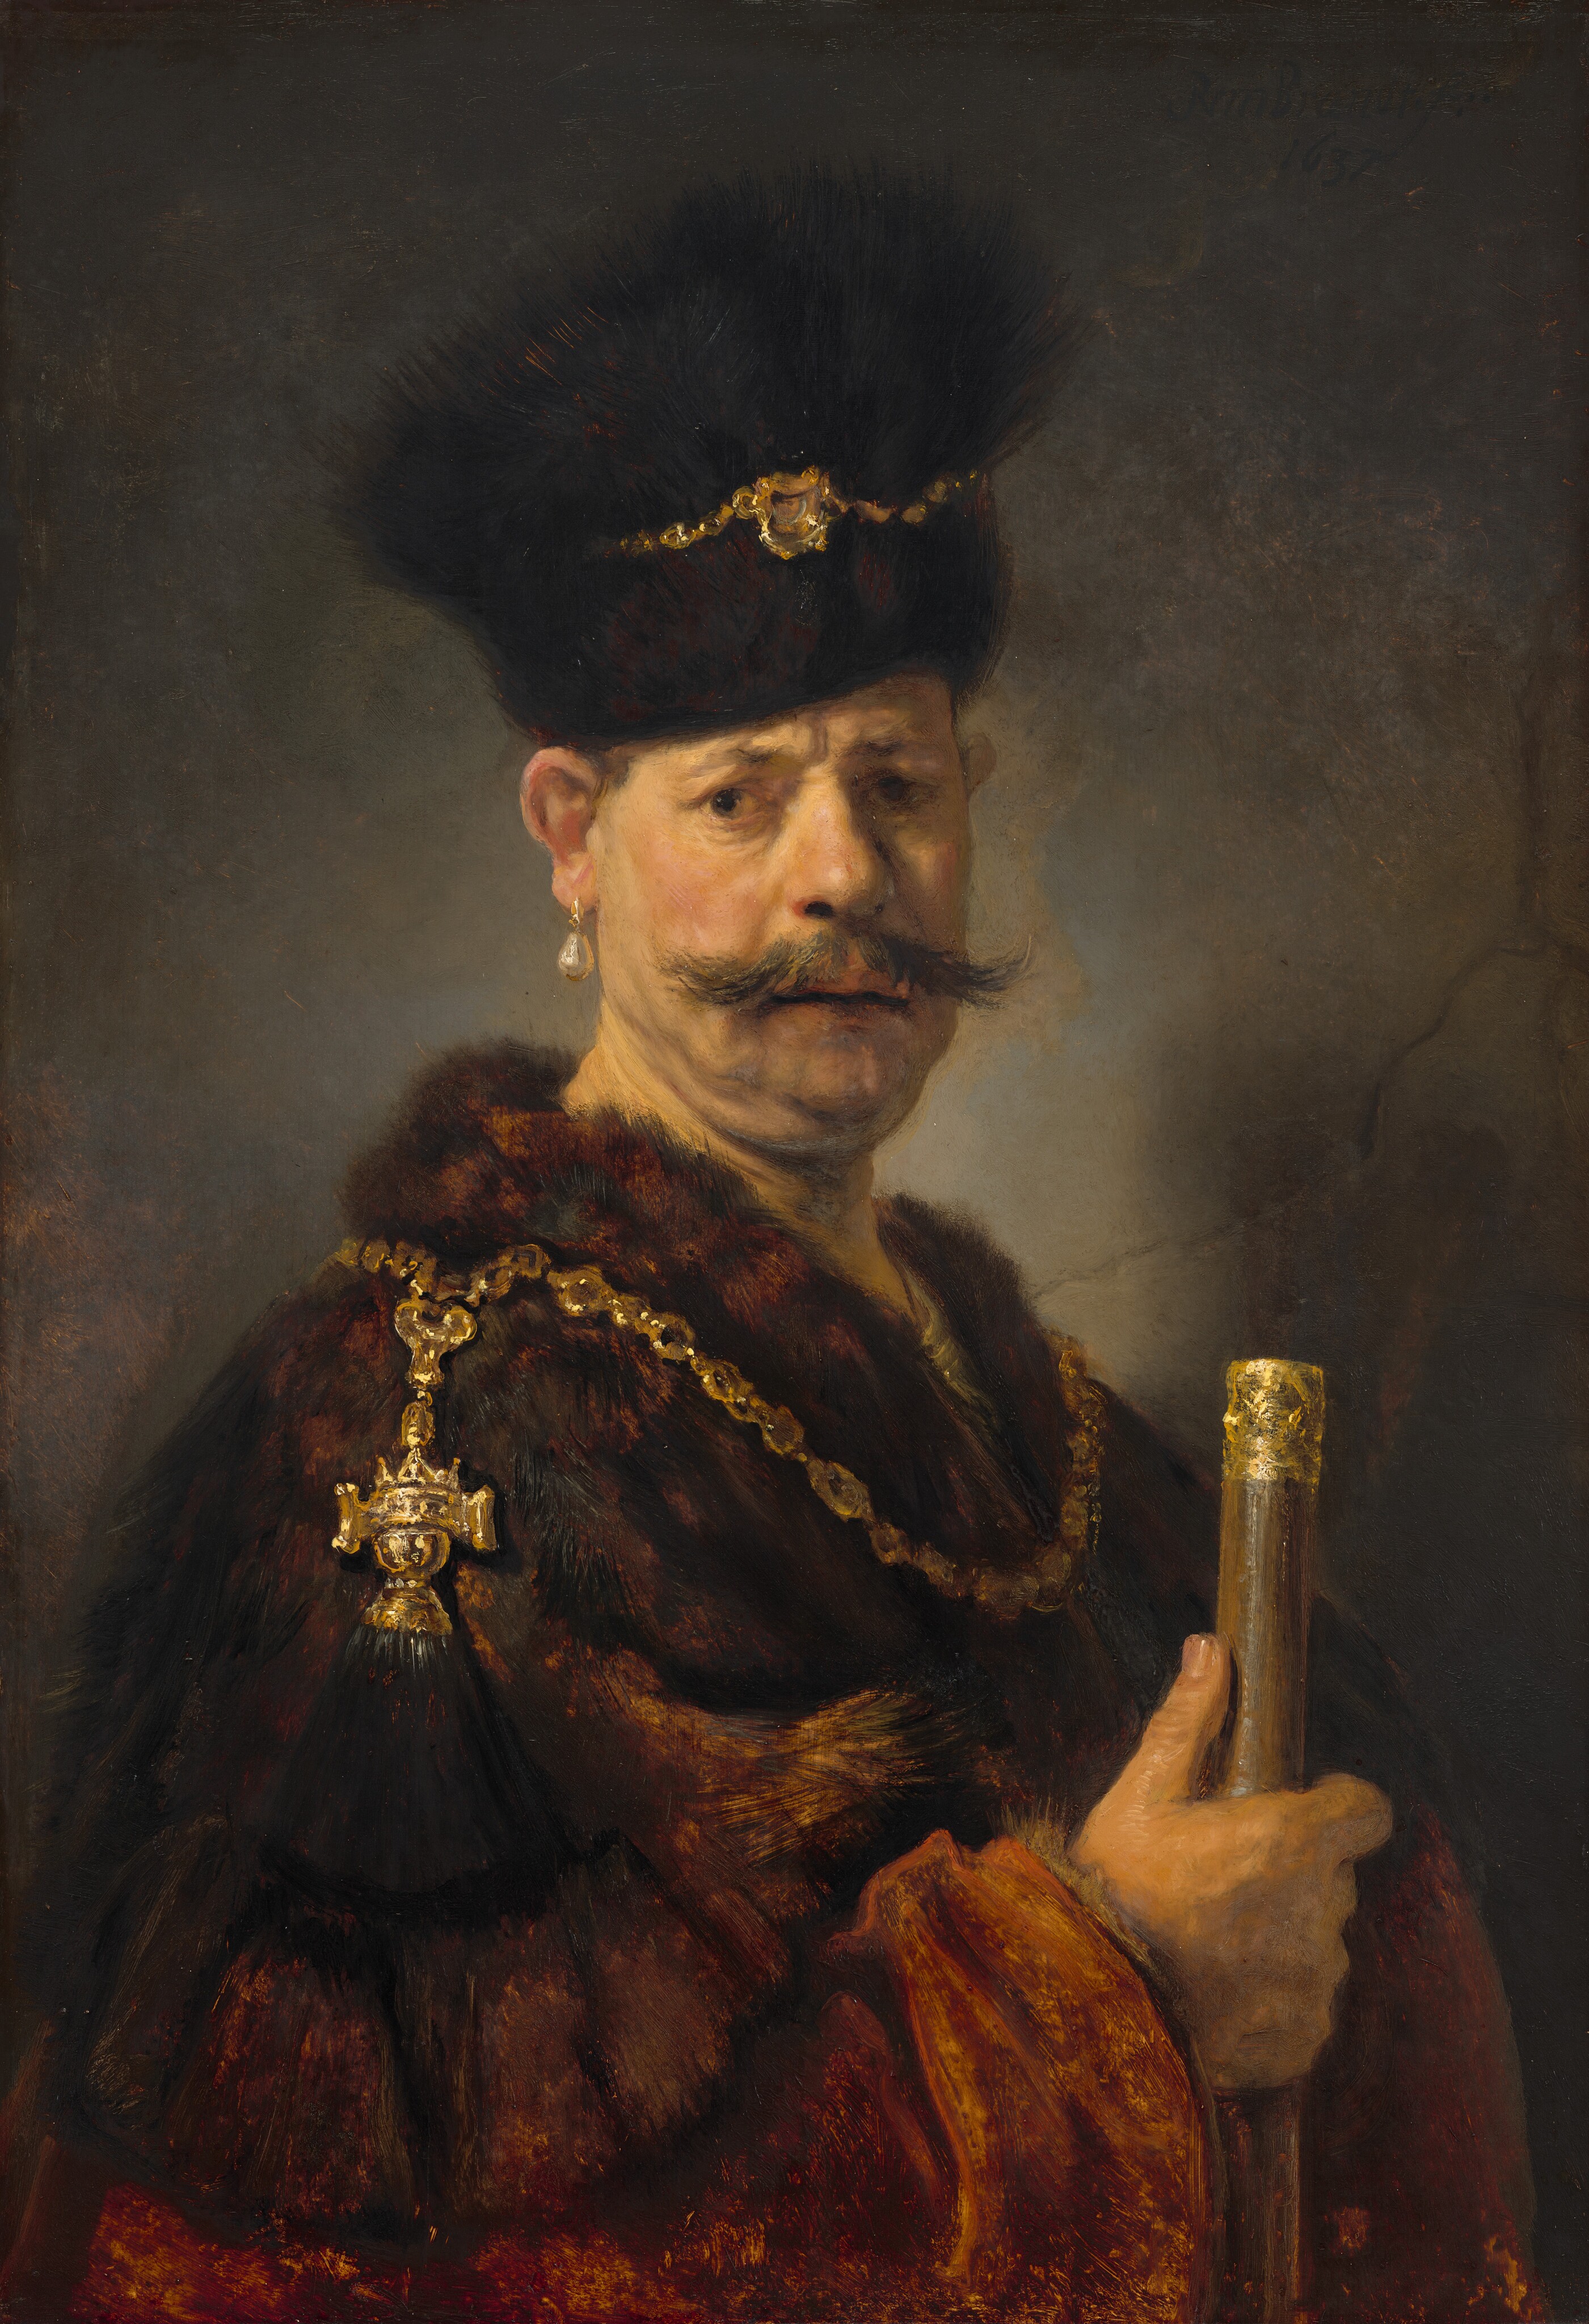 폴란드 귀족(A Polish Nobleman) by Rembrandt van Rijn - 1637 - 96.8 cm x 66 cm 